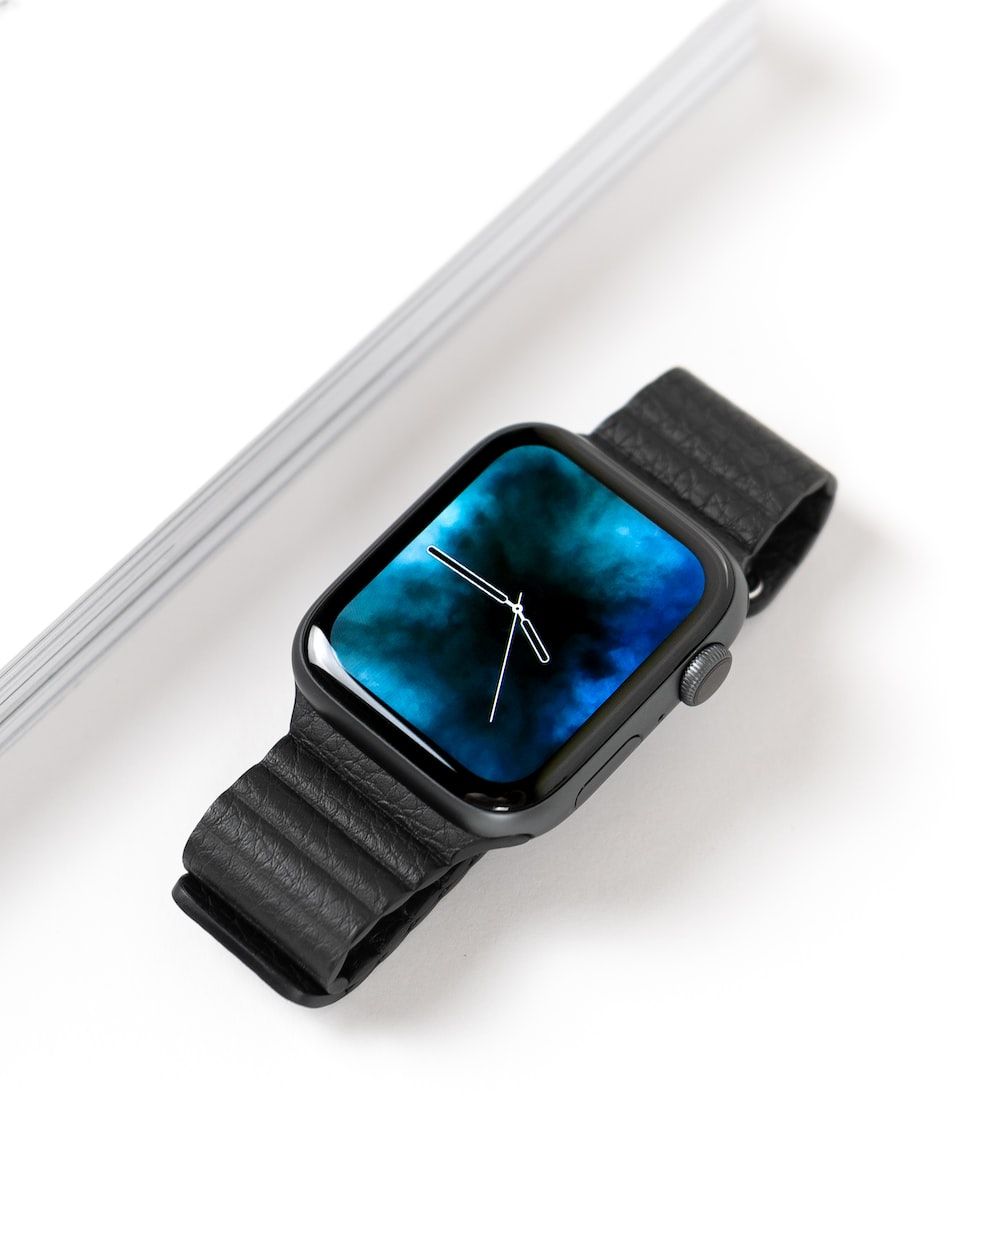  Apple Watch Hintergrundbild 1000x1250. Foto zum Thema Weltraumgraue Apple Watch